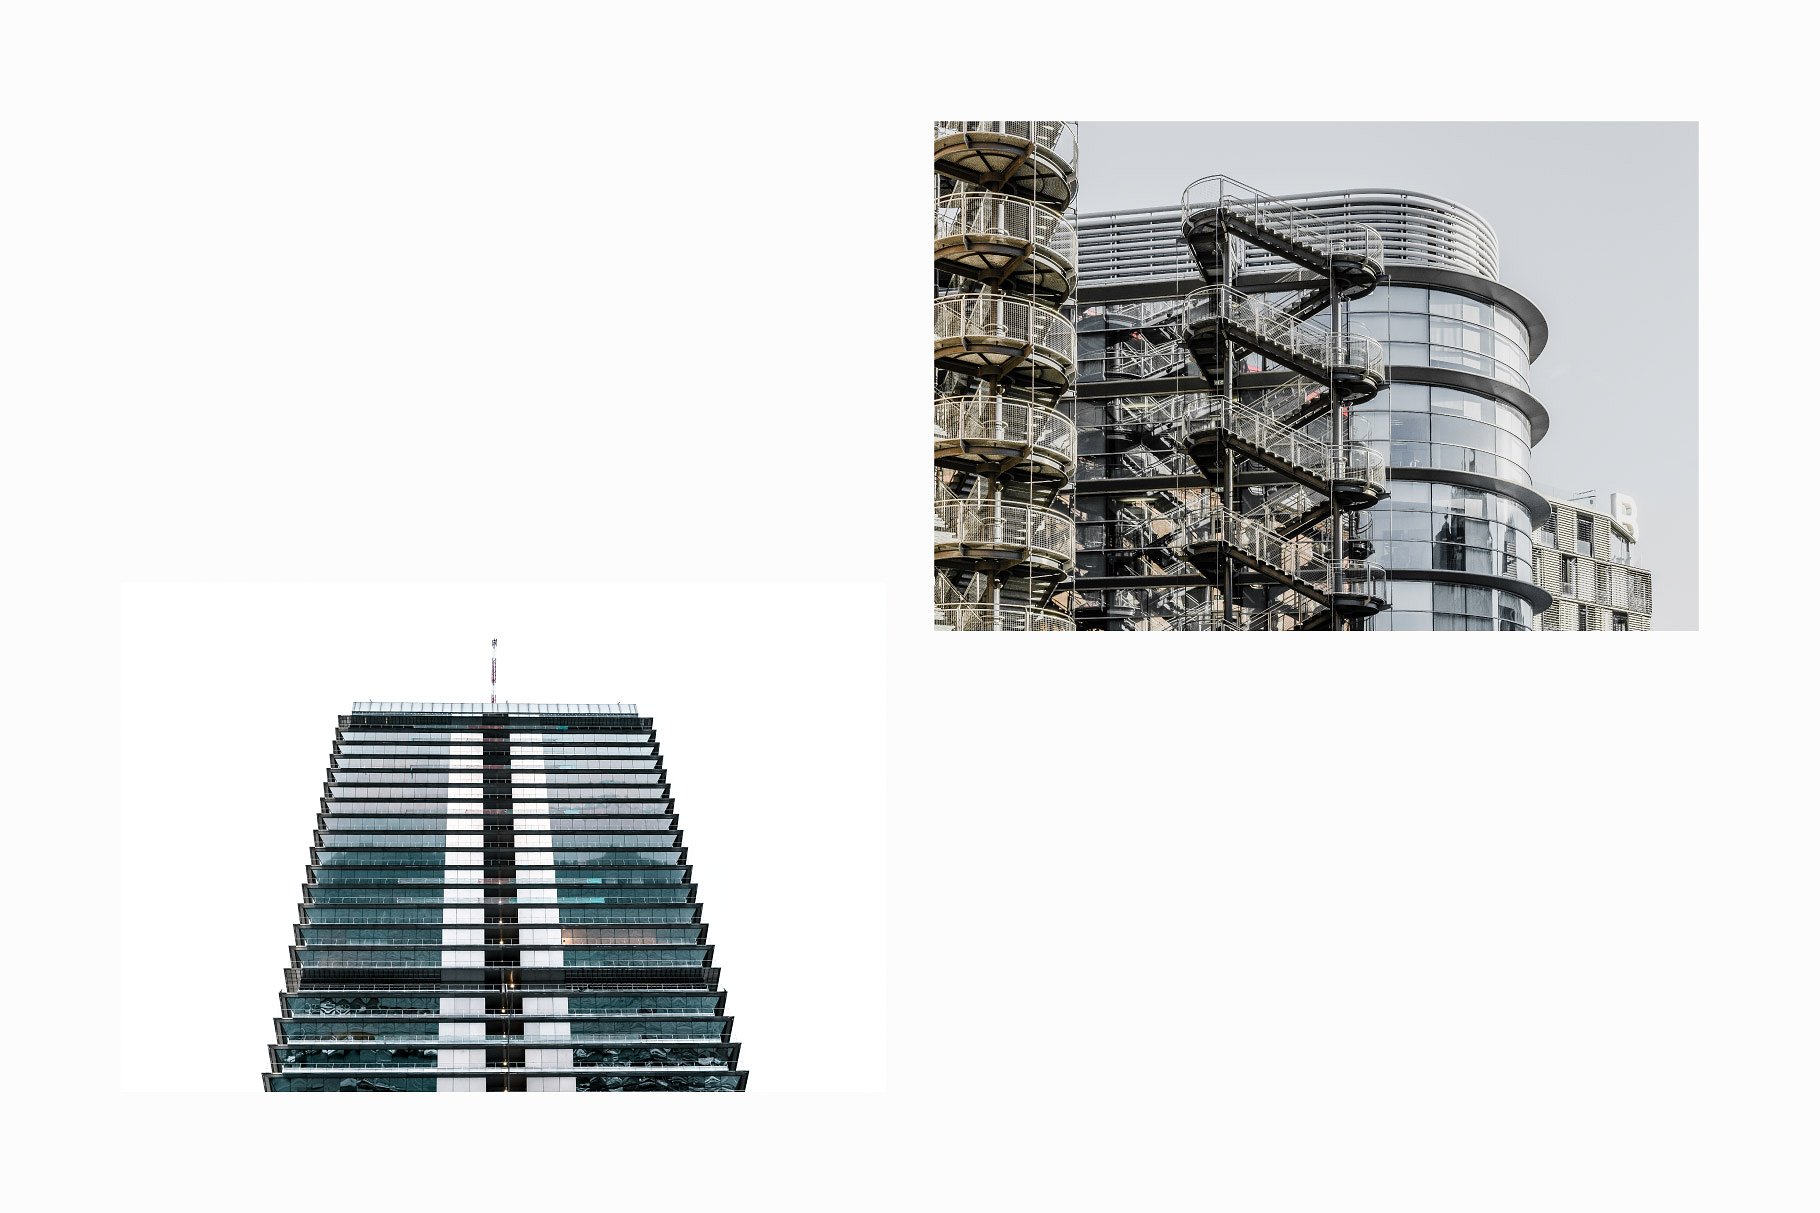 10张高分辨率建筑照片V.3 10 Architecture Photos Pack Vol.3插图4